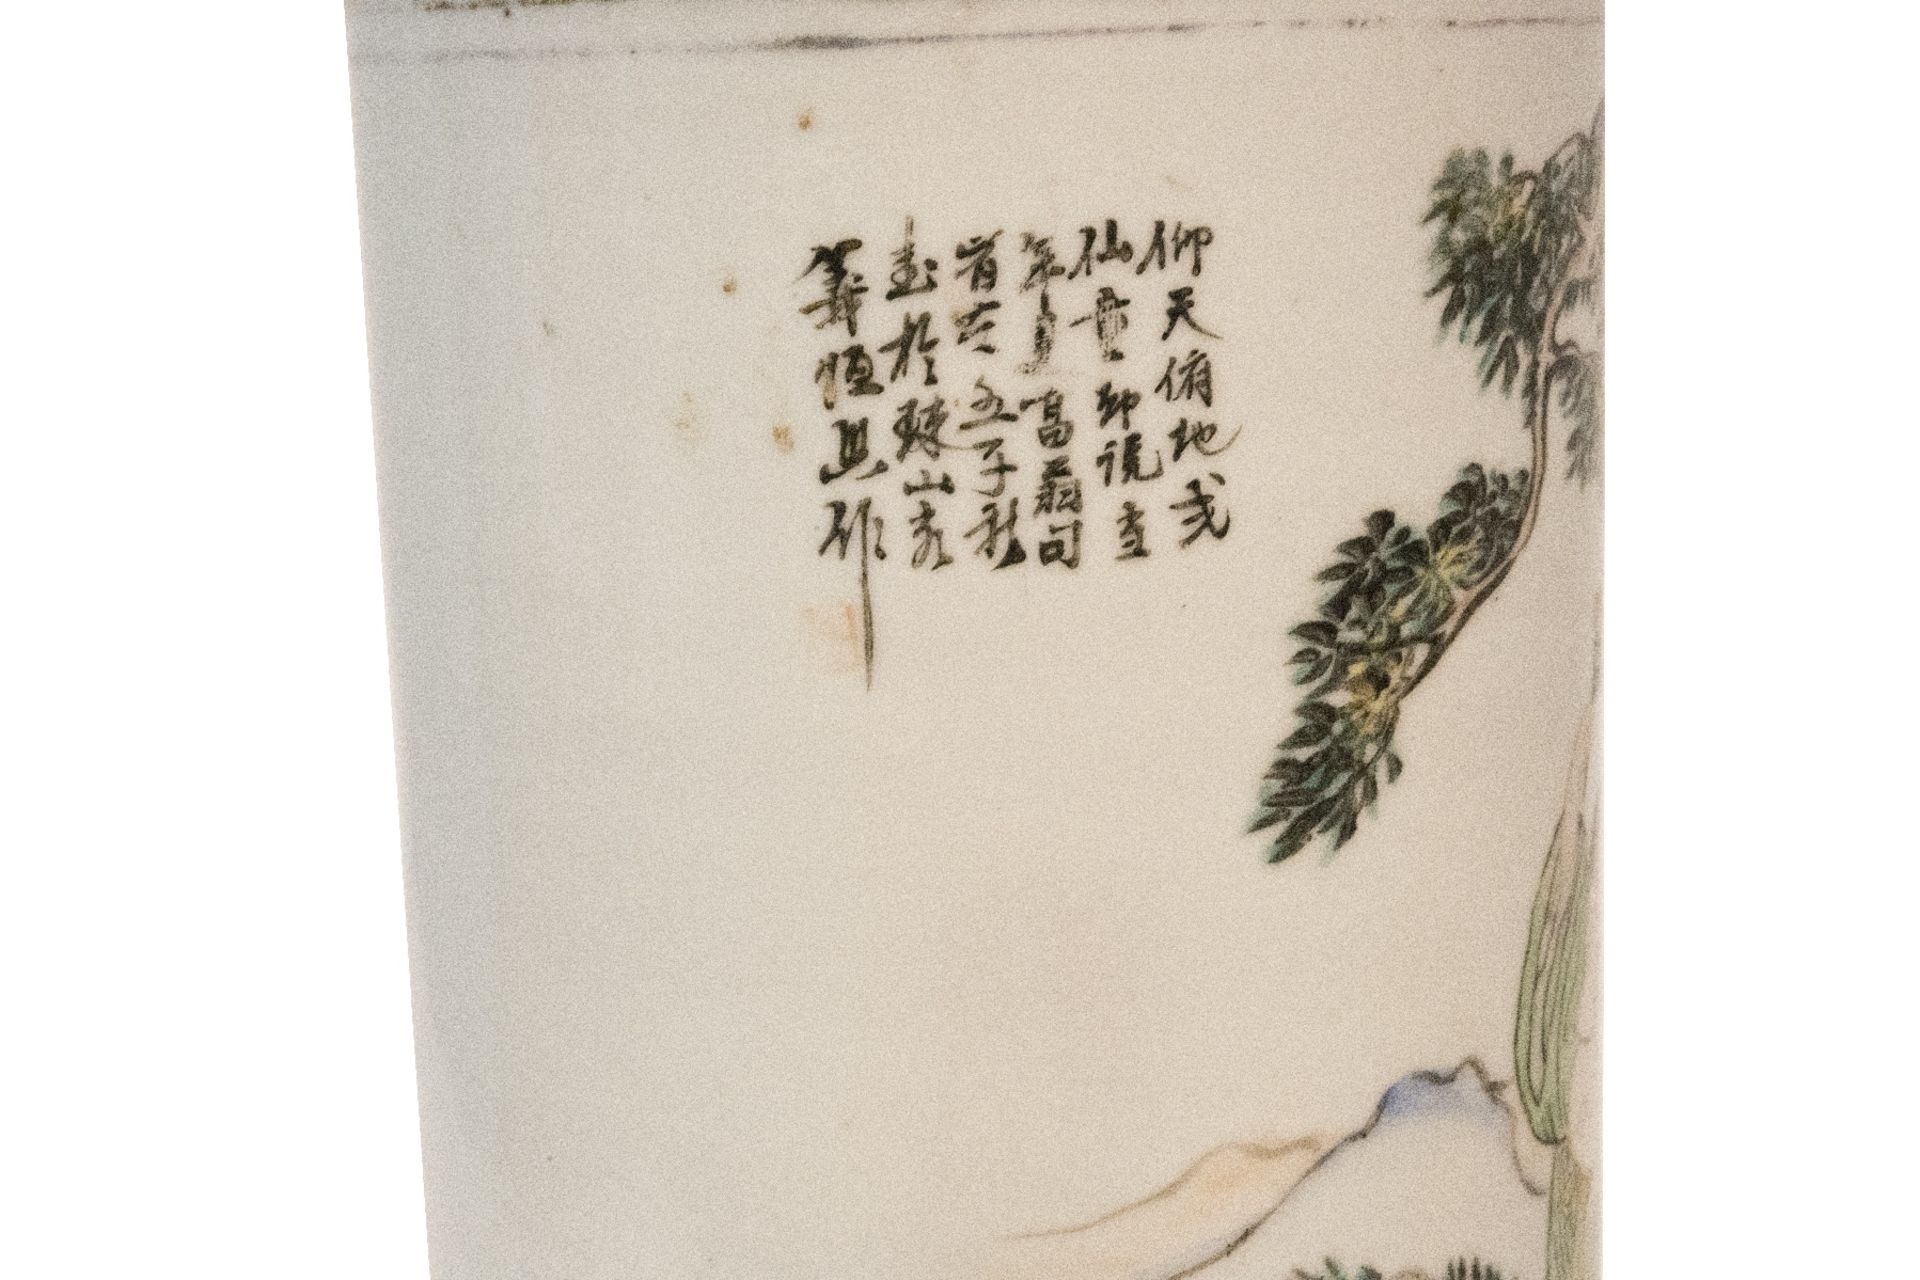 Chinesische Vase aus Min Gio Zeit (1912-1949) | Chinese Vase from Min Gio Period (1912-1949) - Image 4 of 5